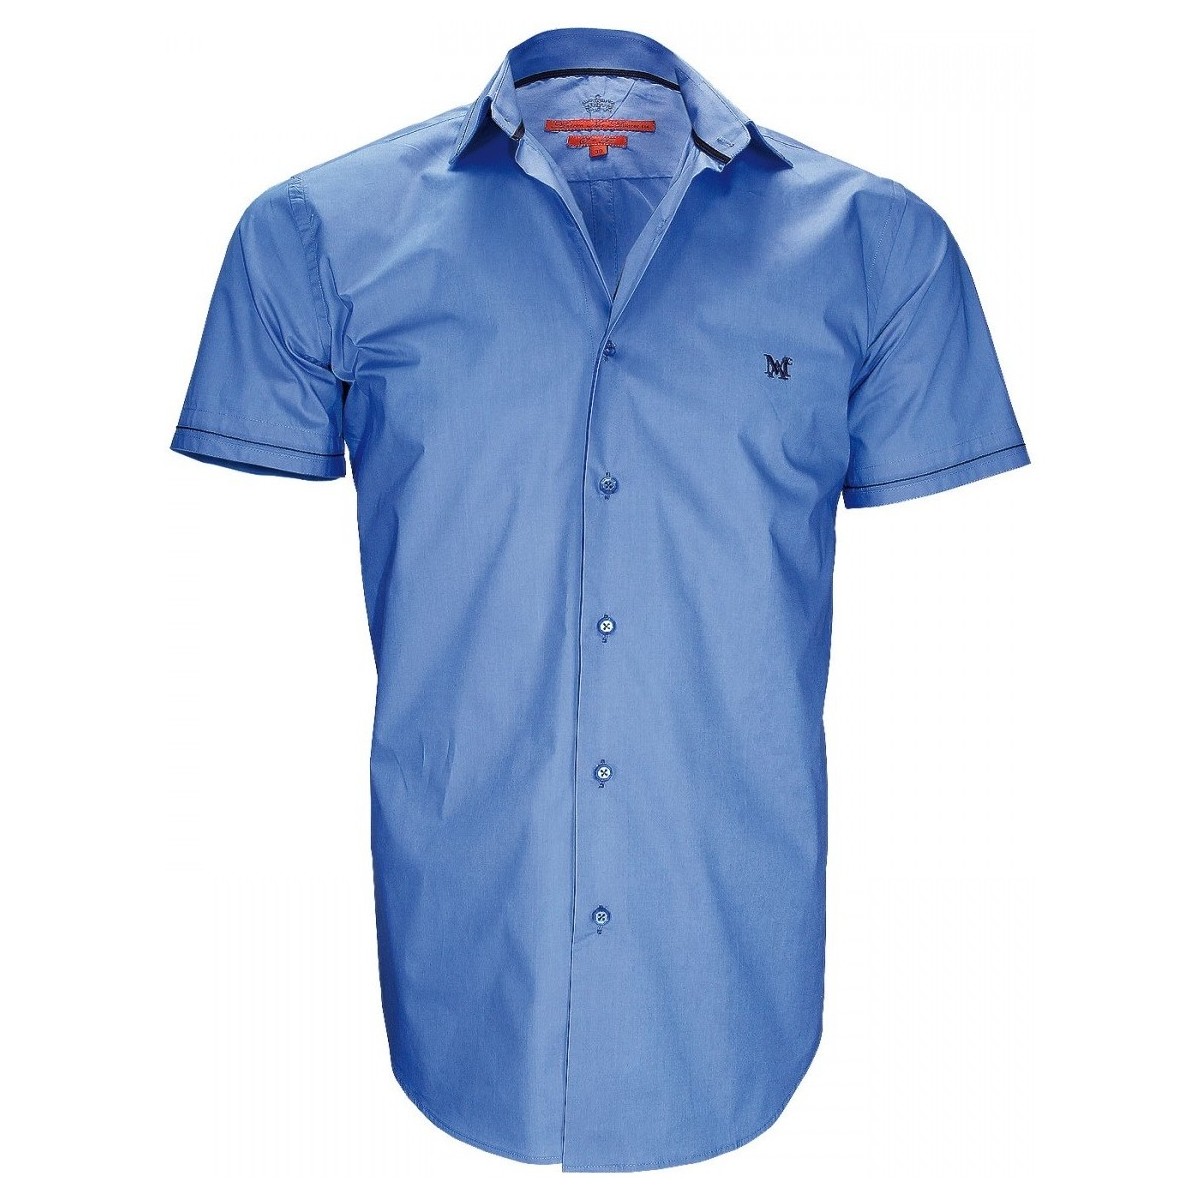 Vêtements Homme ou tour de hanches se mesure à lendroit le plus fort chemisette mode new pacifique bleu Bleu